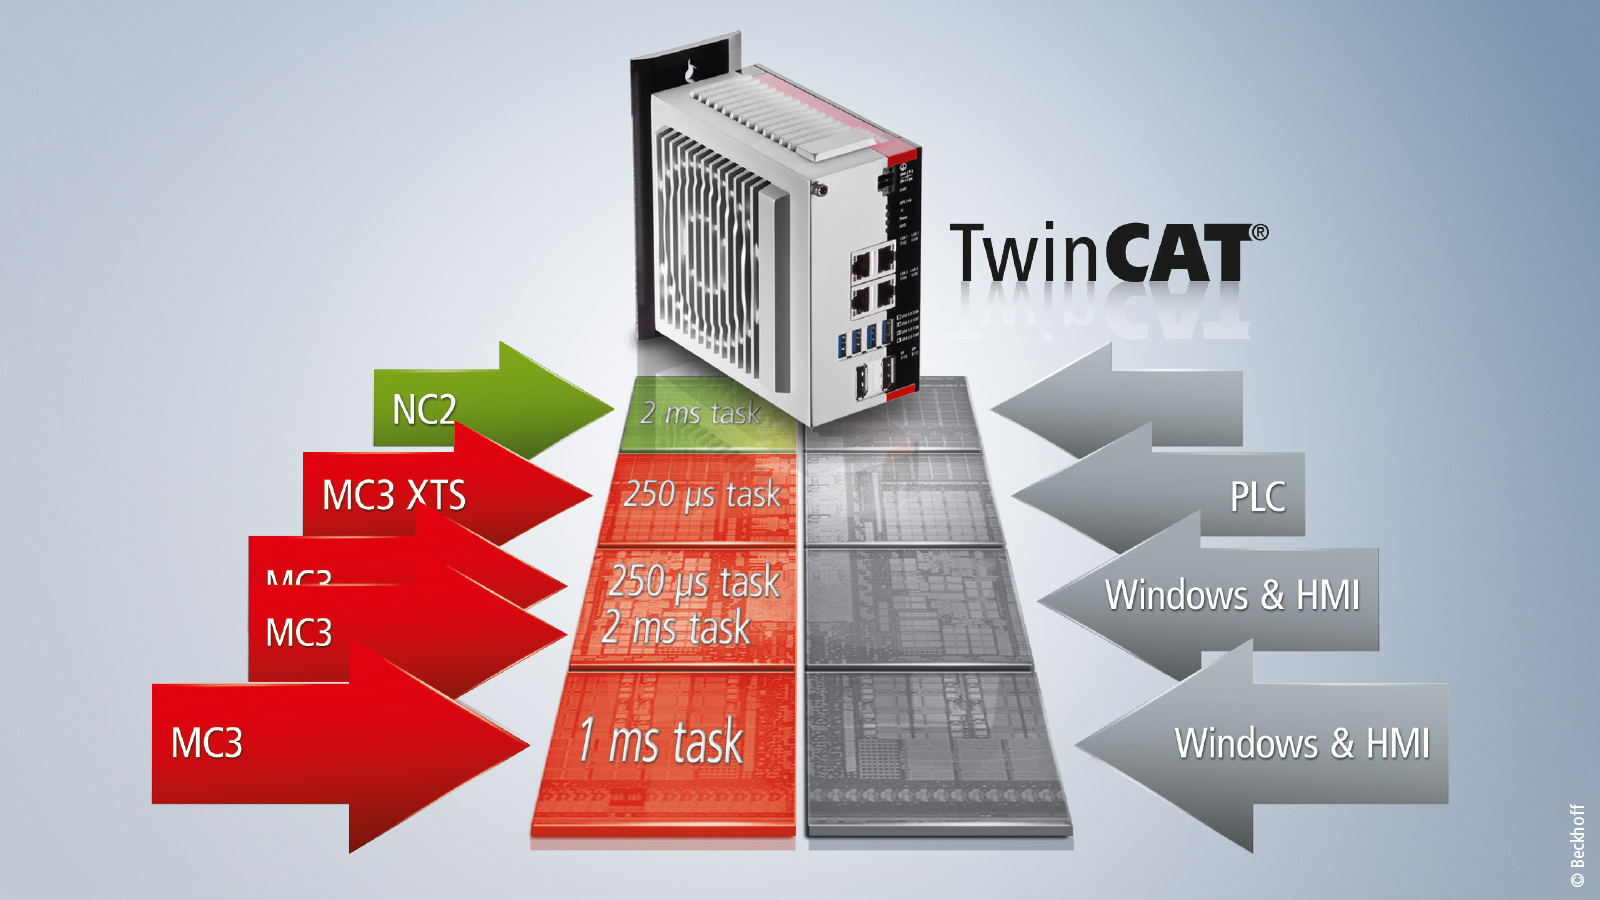 使用 TwinCAT MC3，可带动的轴数量和应用的复杂程度与所选的 TwinCAT 平台等级相匹配。